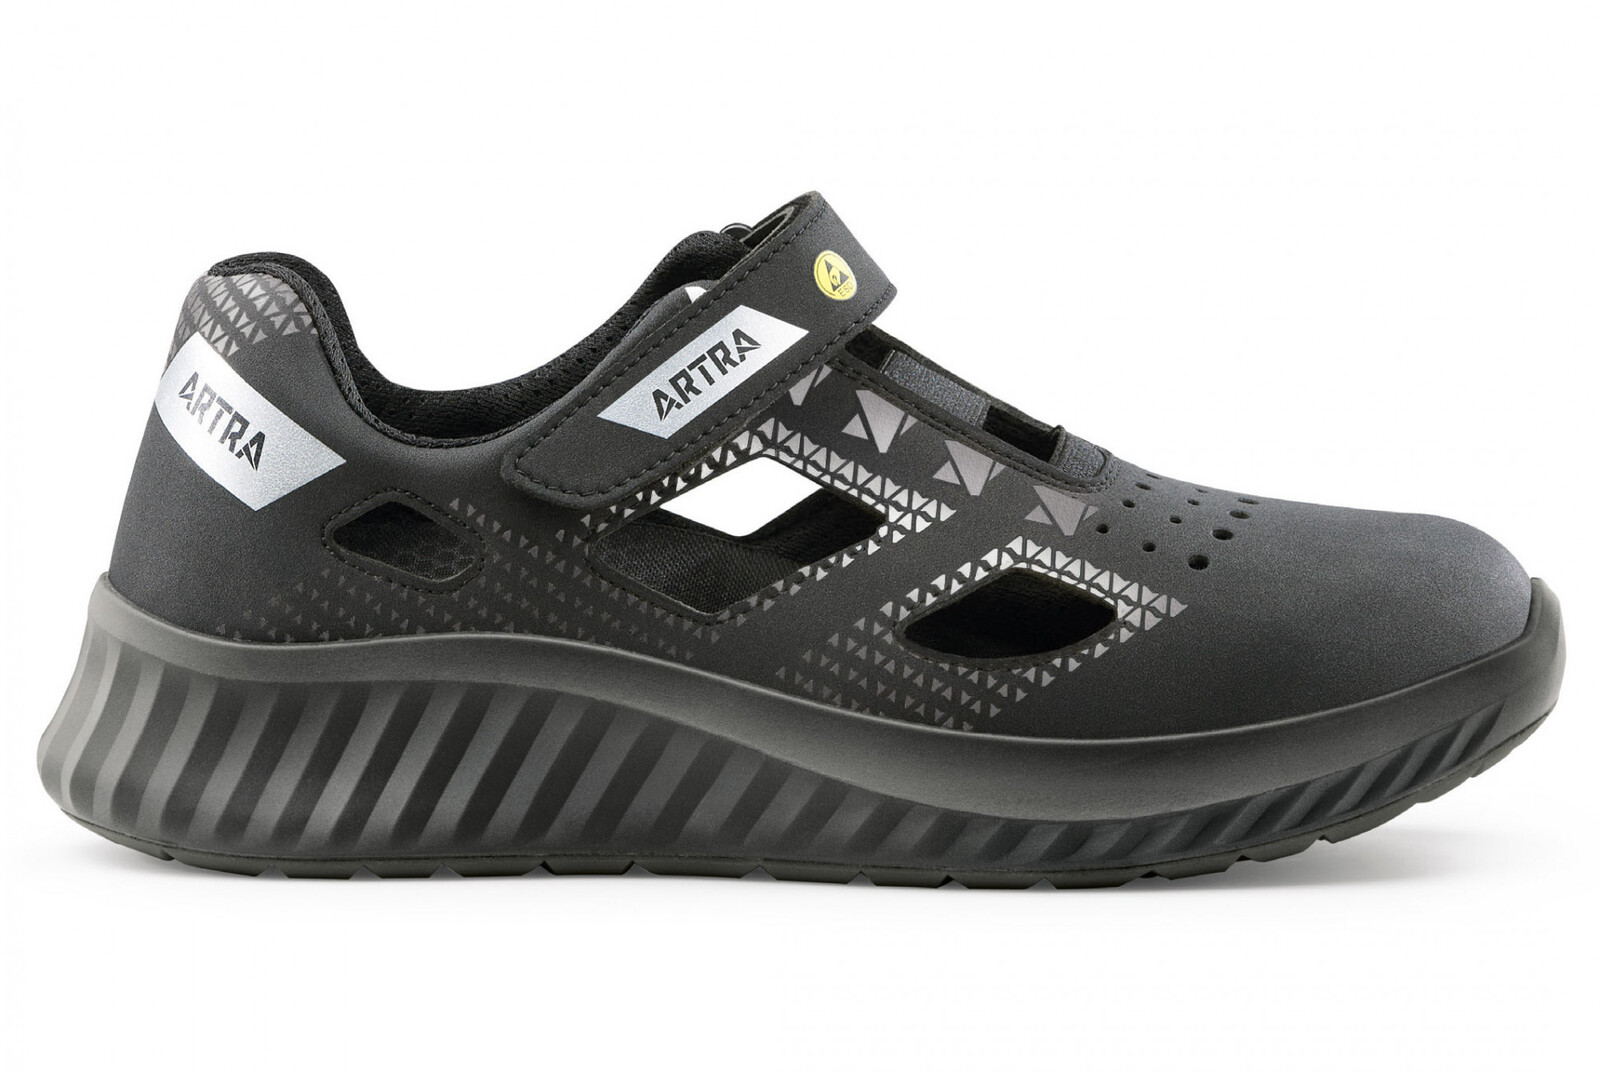 Bezpečnostné sandále Artra Arso 701 616560 S1P SRC ESD - veľkosť: 38, farba: čierna/sivá